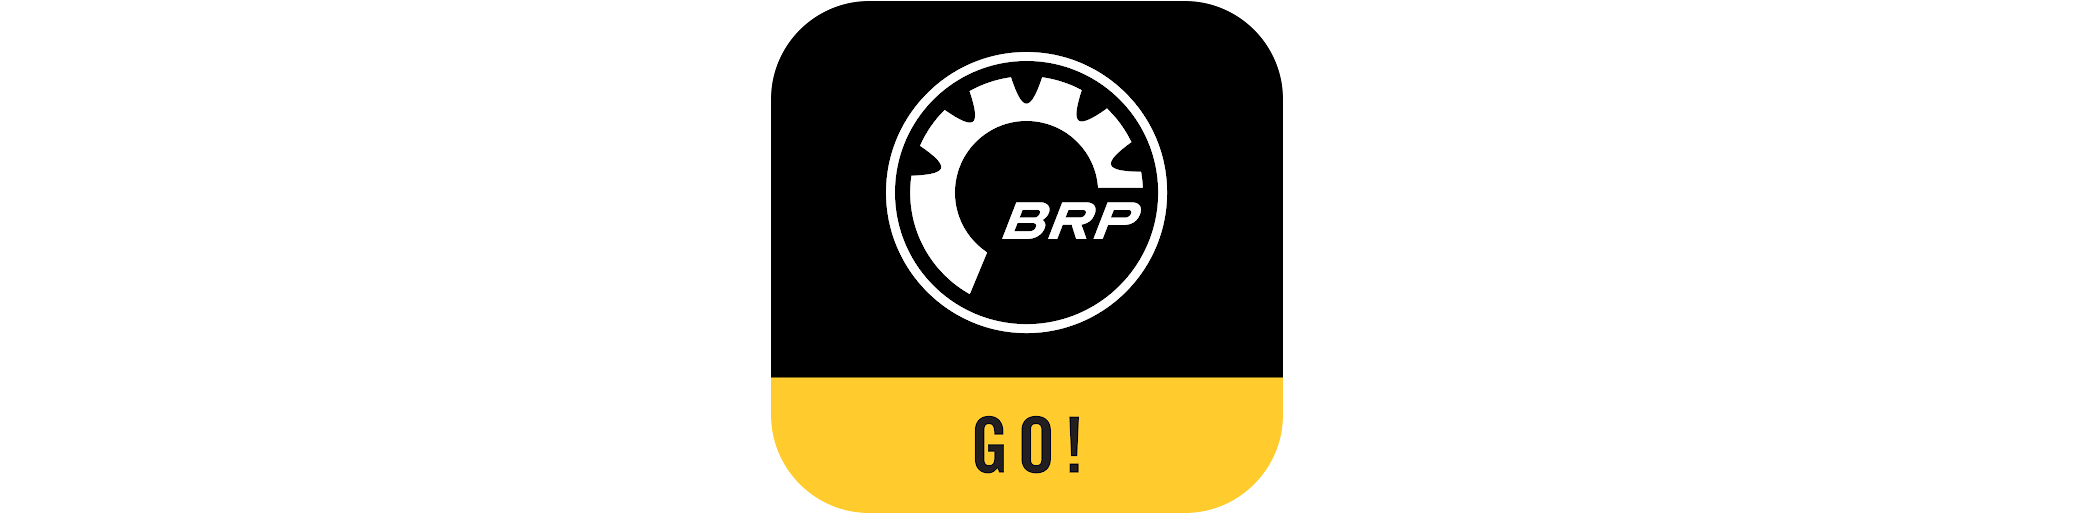 Aplikacja BRP GO! logo